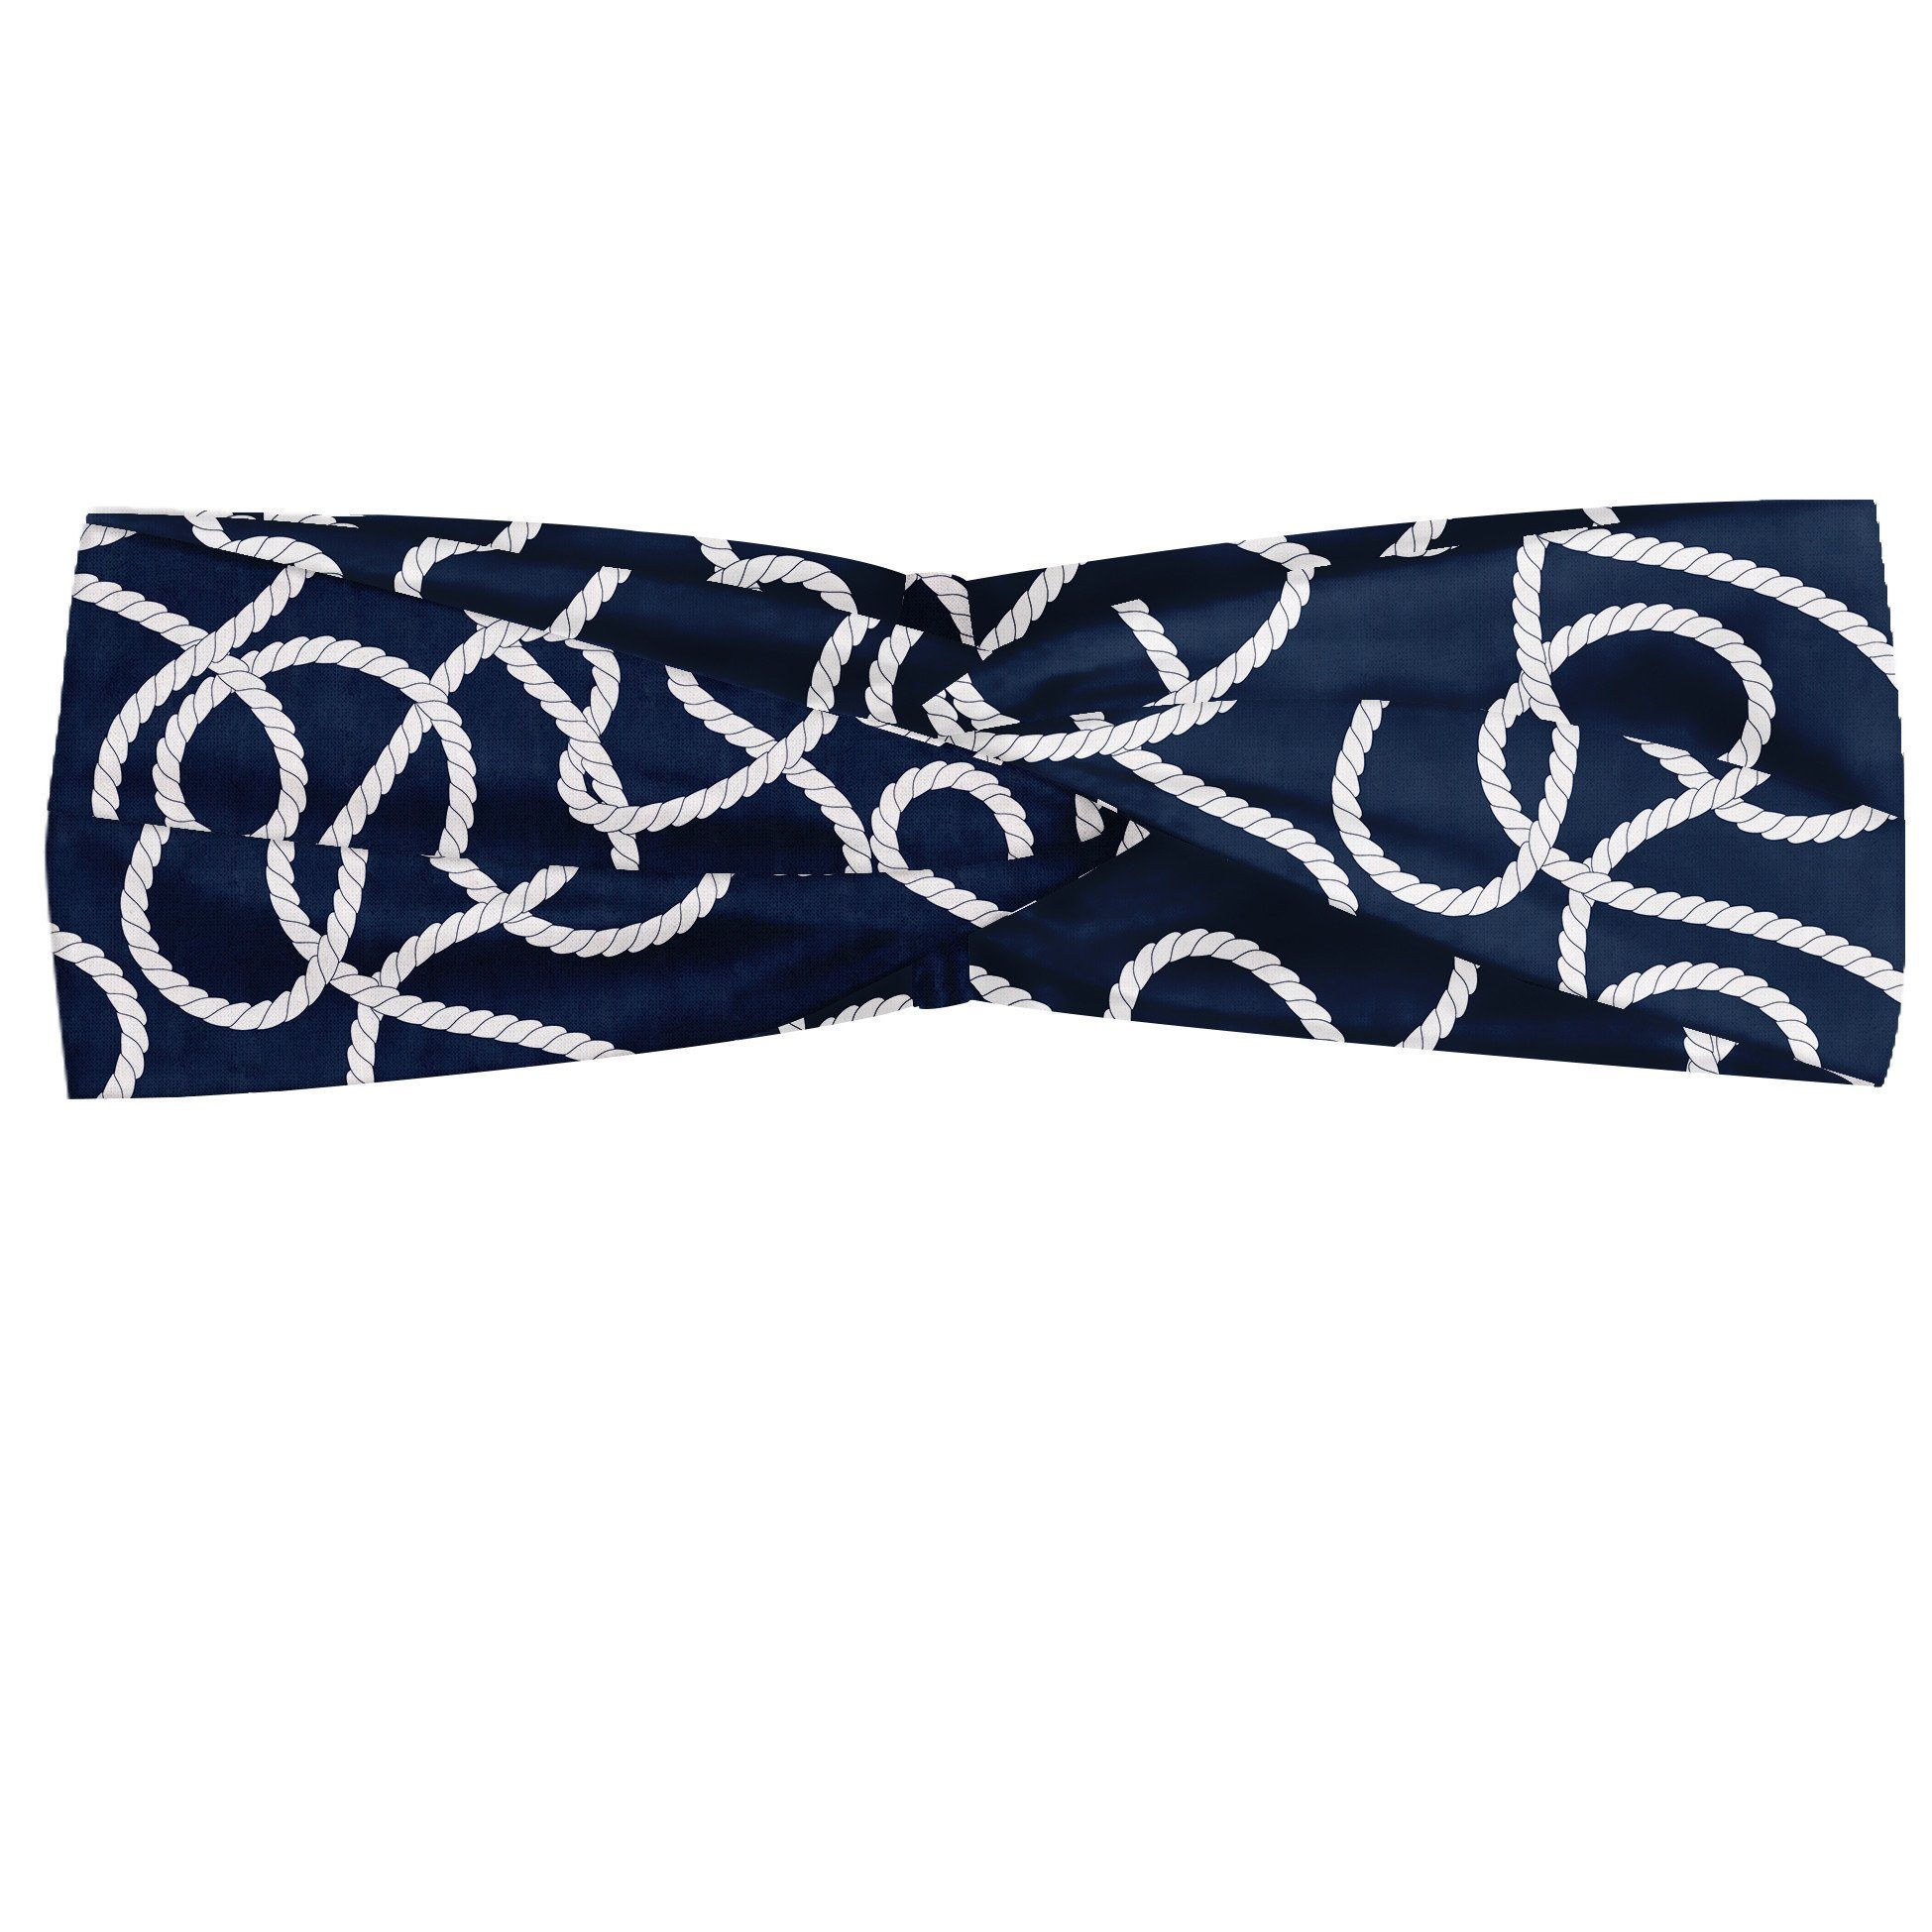 Abakuhaus Stirnband Elastisch und Angenehme alltags accessories Marine Tangled Ocean Marine Ropes